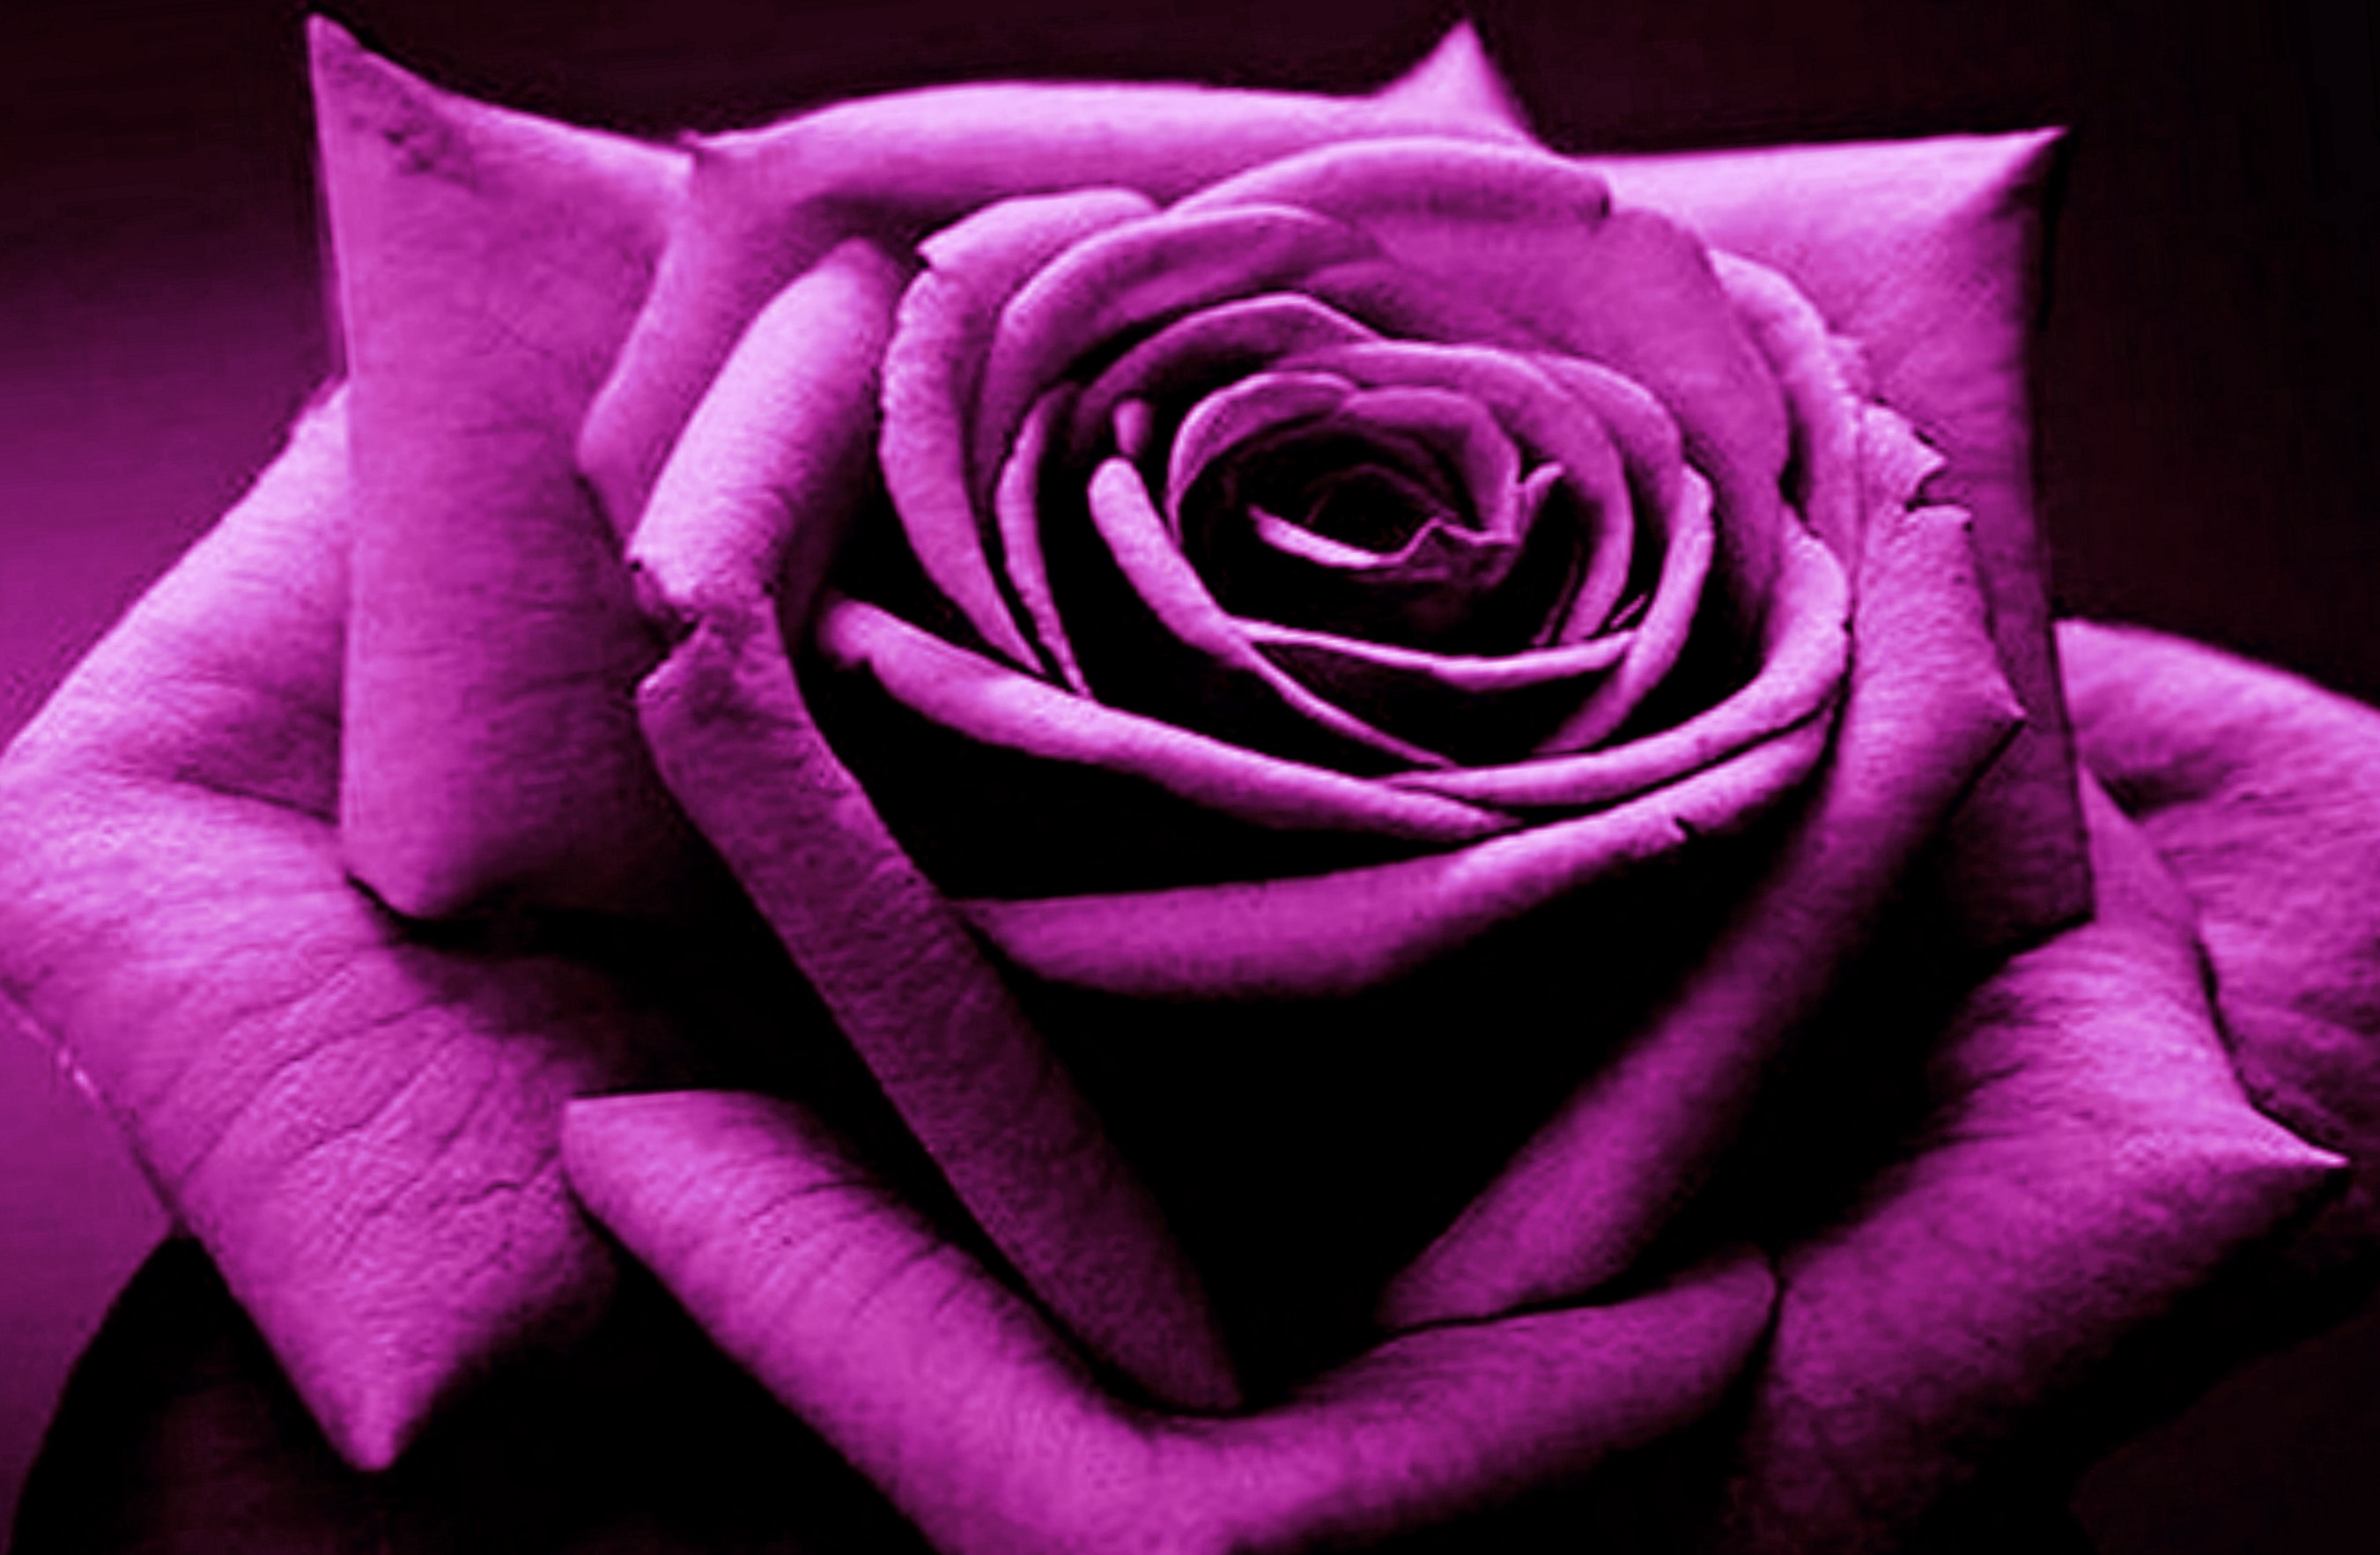 1500452 Обои и Фиолетовая Роза картинки на рабочий стол. Скачать  заставки на ПК бесплатно